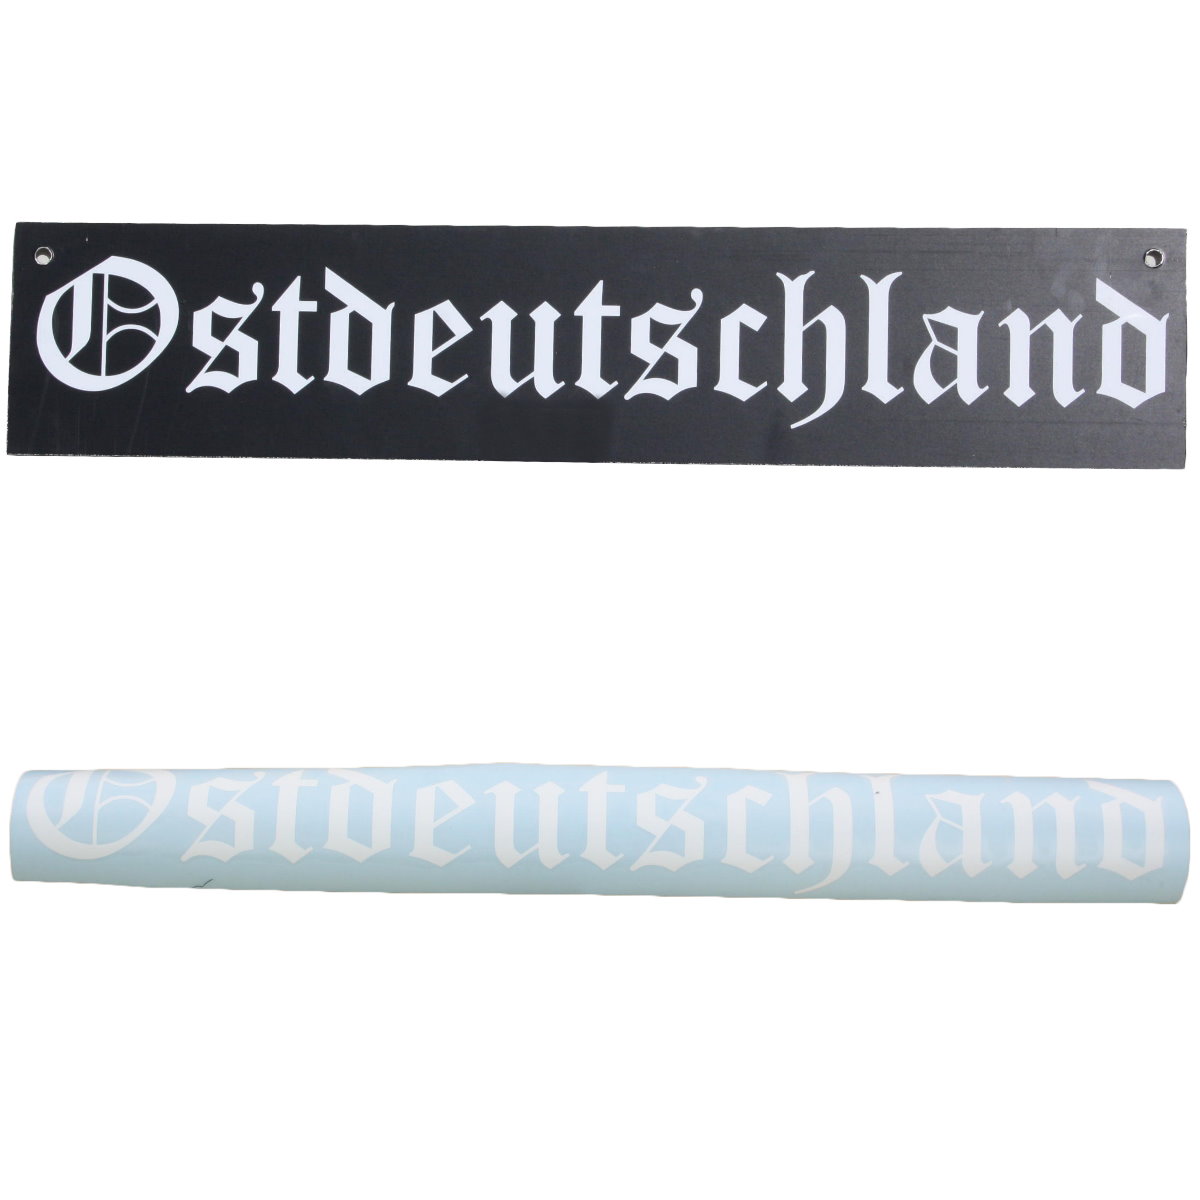 Ostdeutschland Plotter Sticker